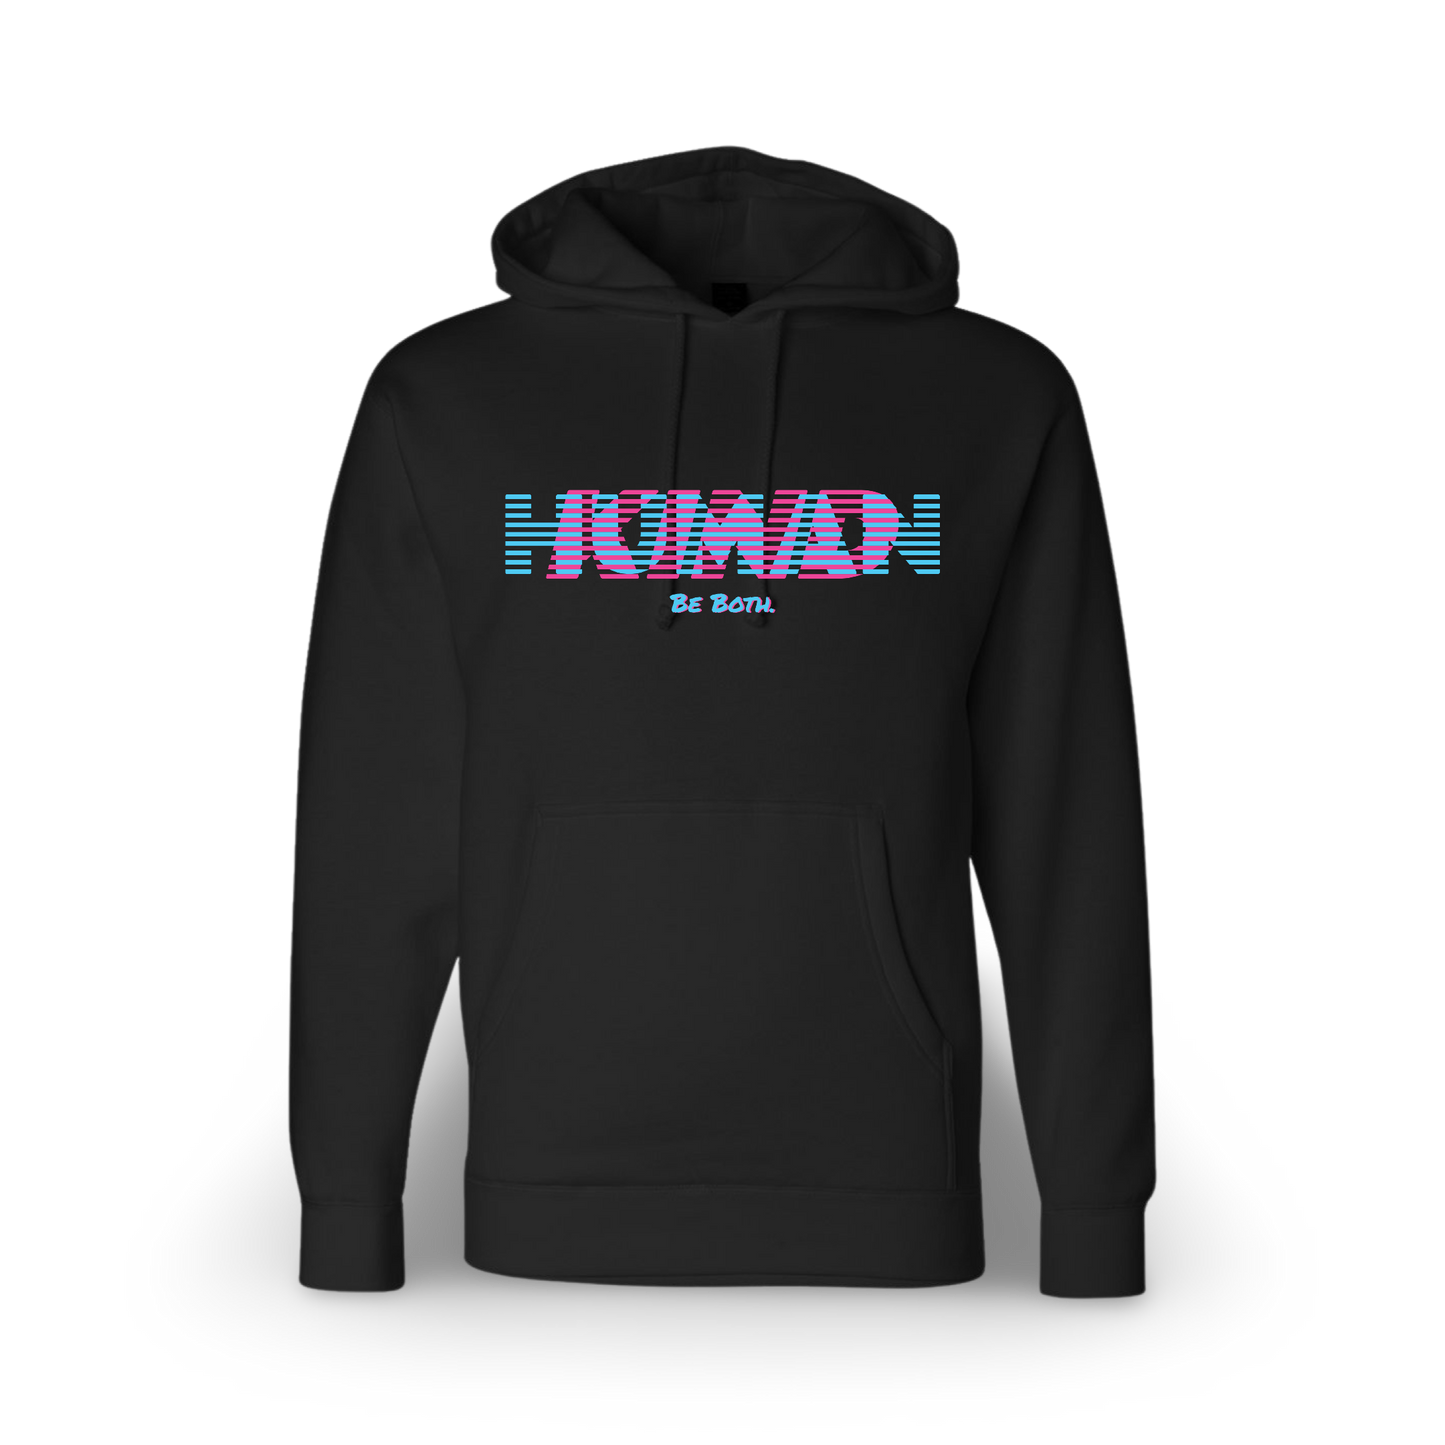 Humankind (Standard Hoodie)